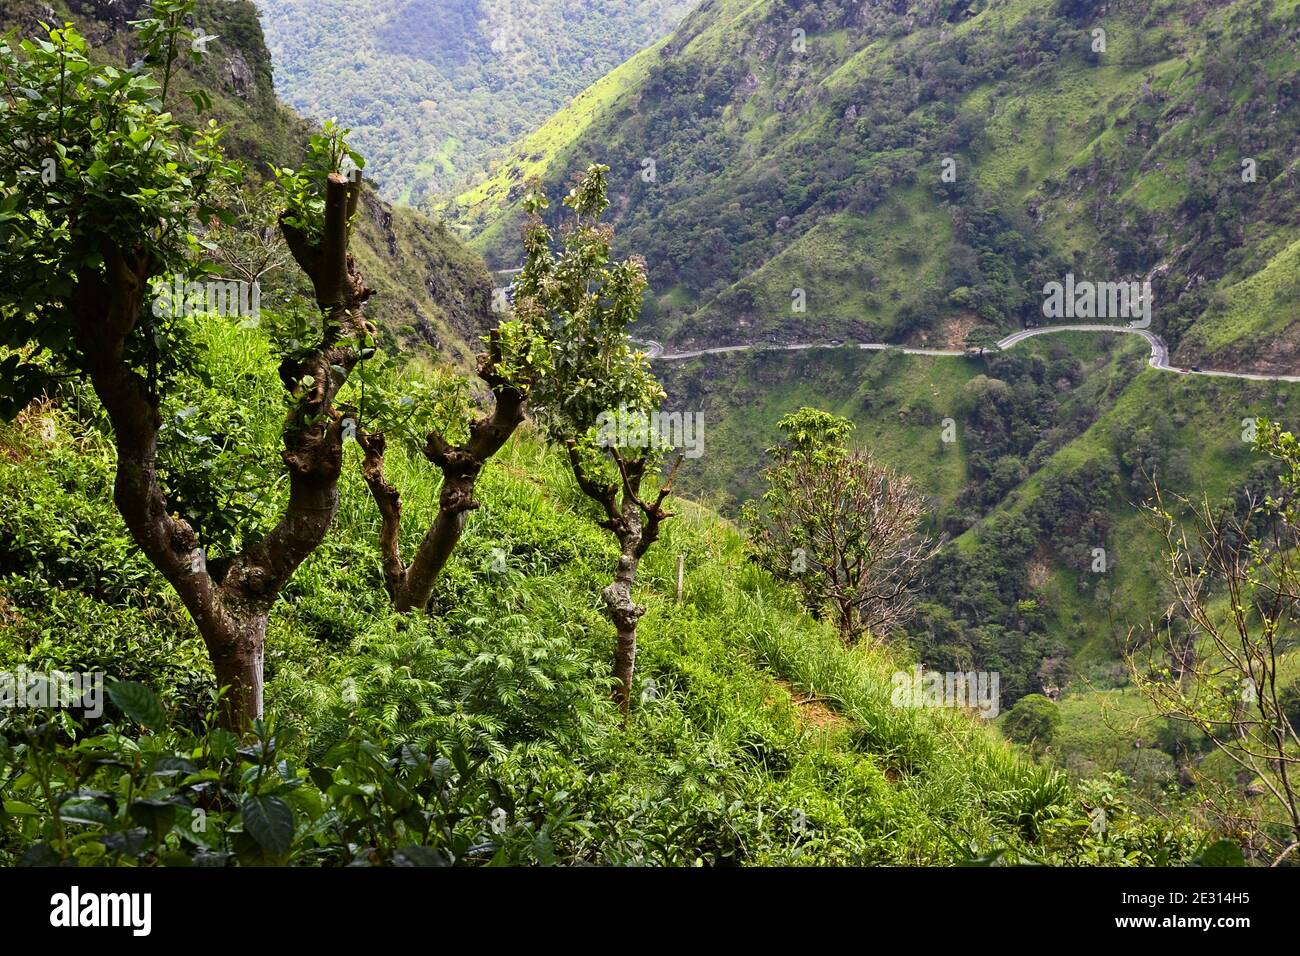 Herbe verte luxuriante dans les montagnes. Route de montagne courbée de l'autre côté. Paysage de couleurs printanières fraîches. Ella, Sri Lanka Banque D'Images